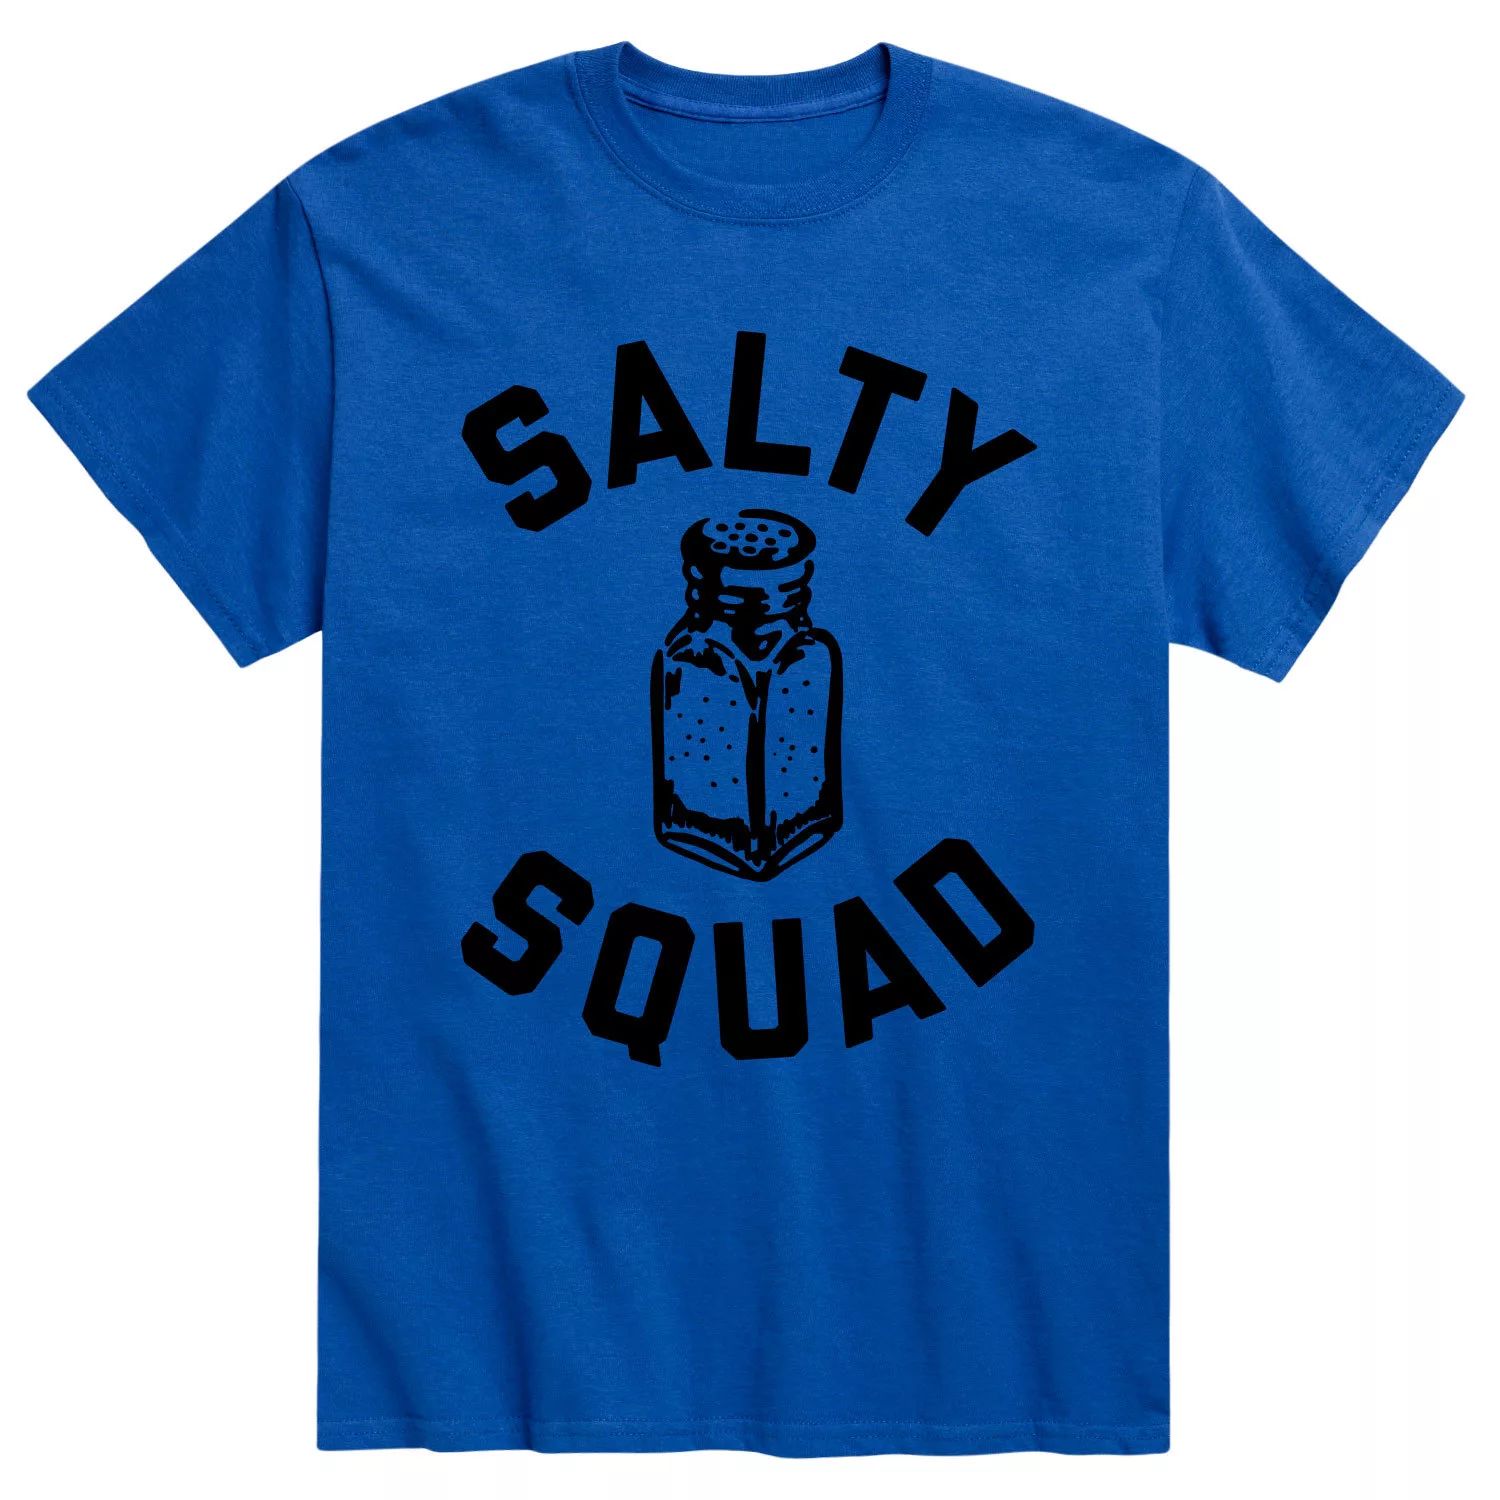 

Мужская футболка Salty Squad Licensed Character